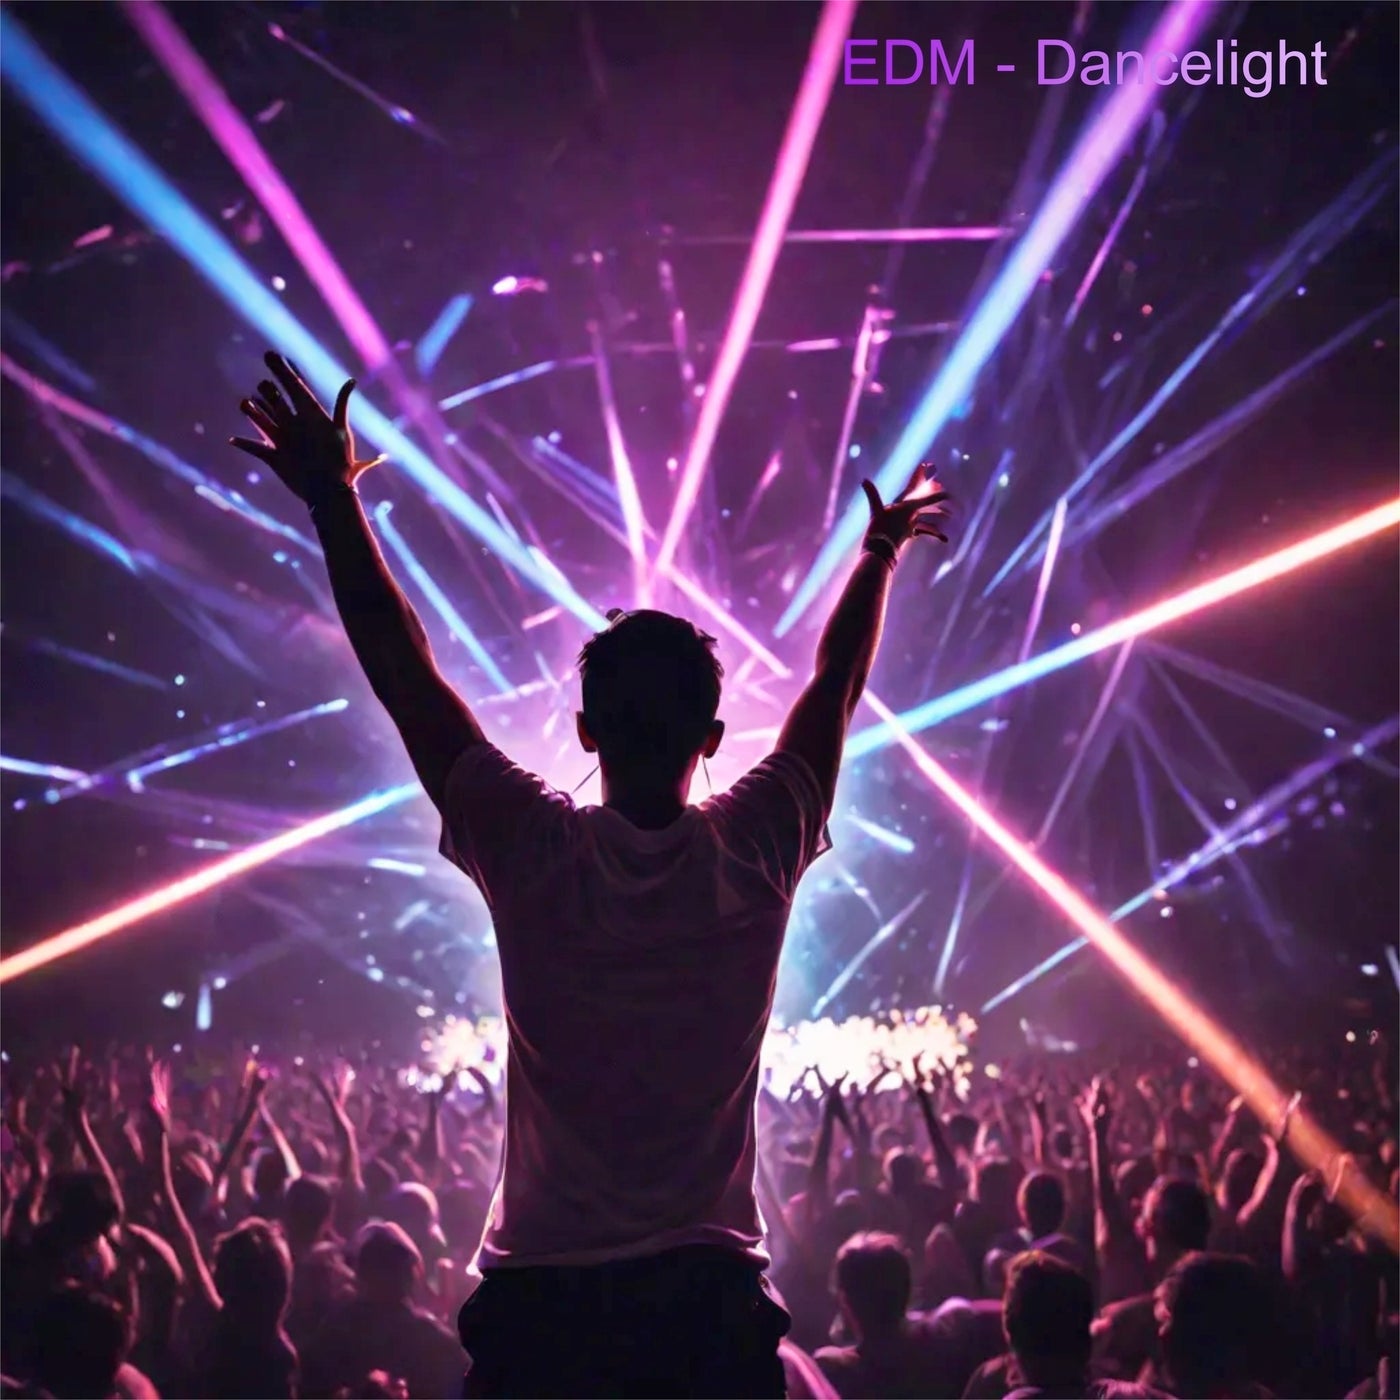 Edm - Dancelight